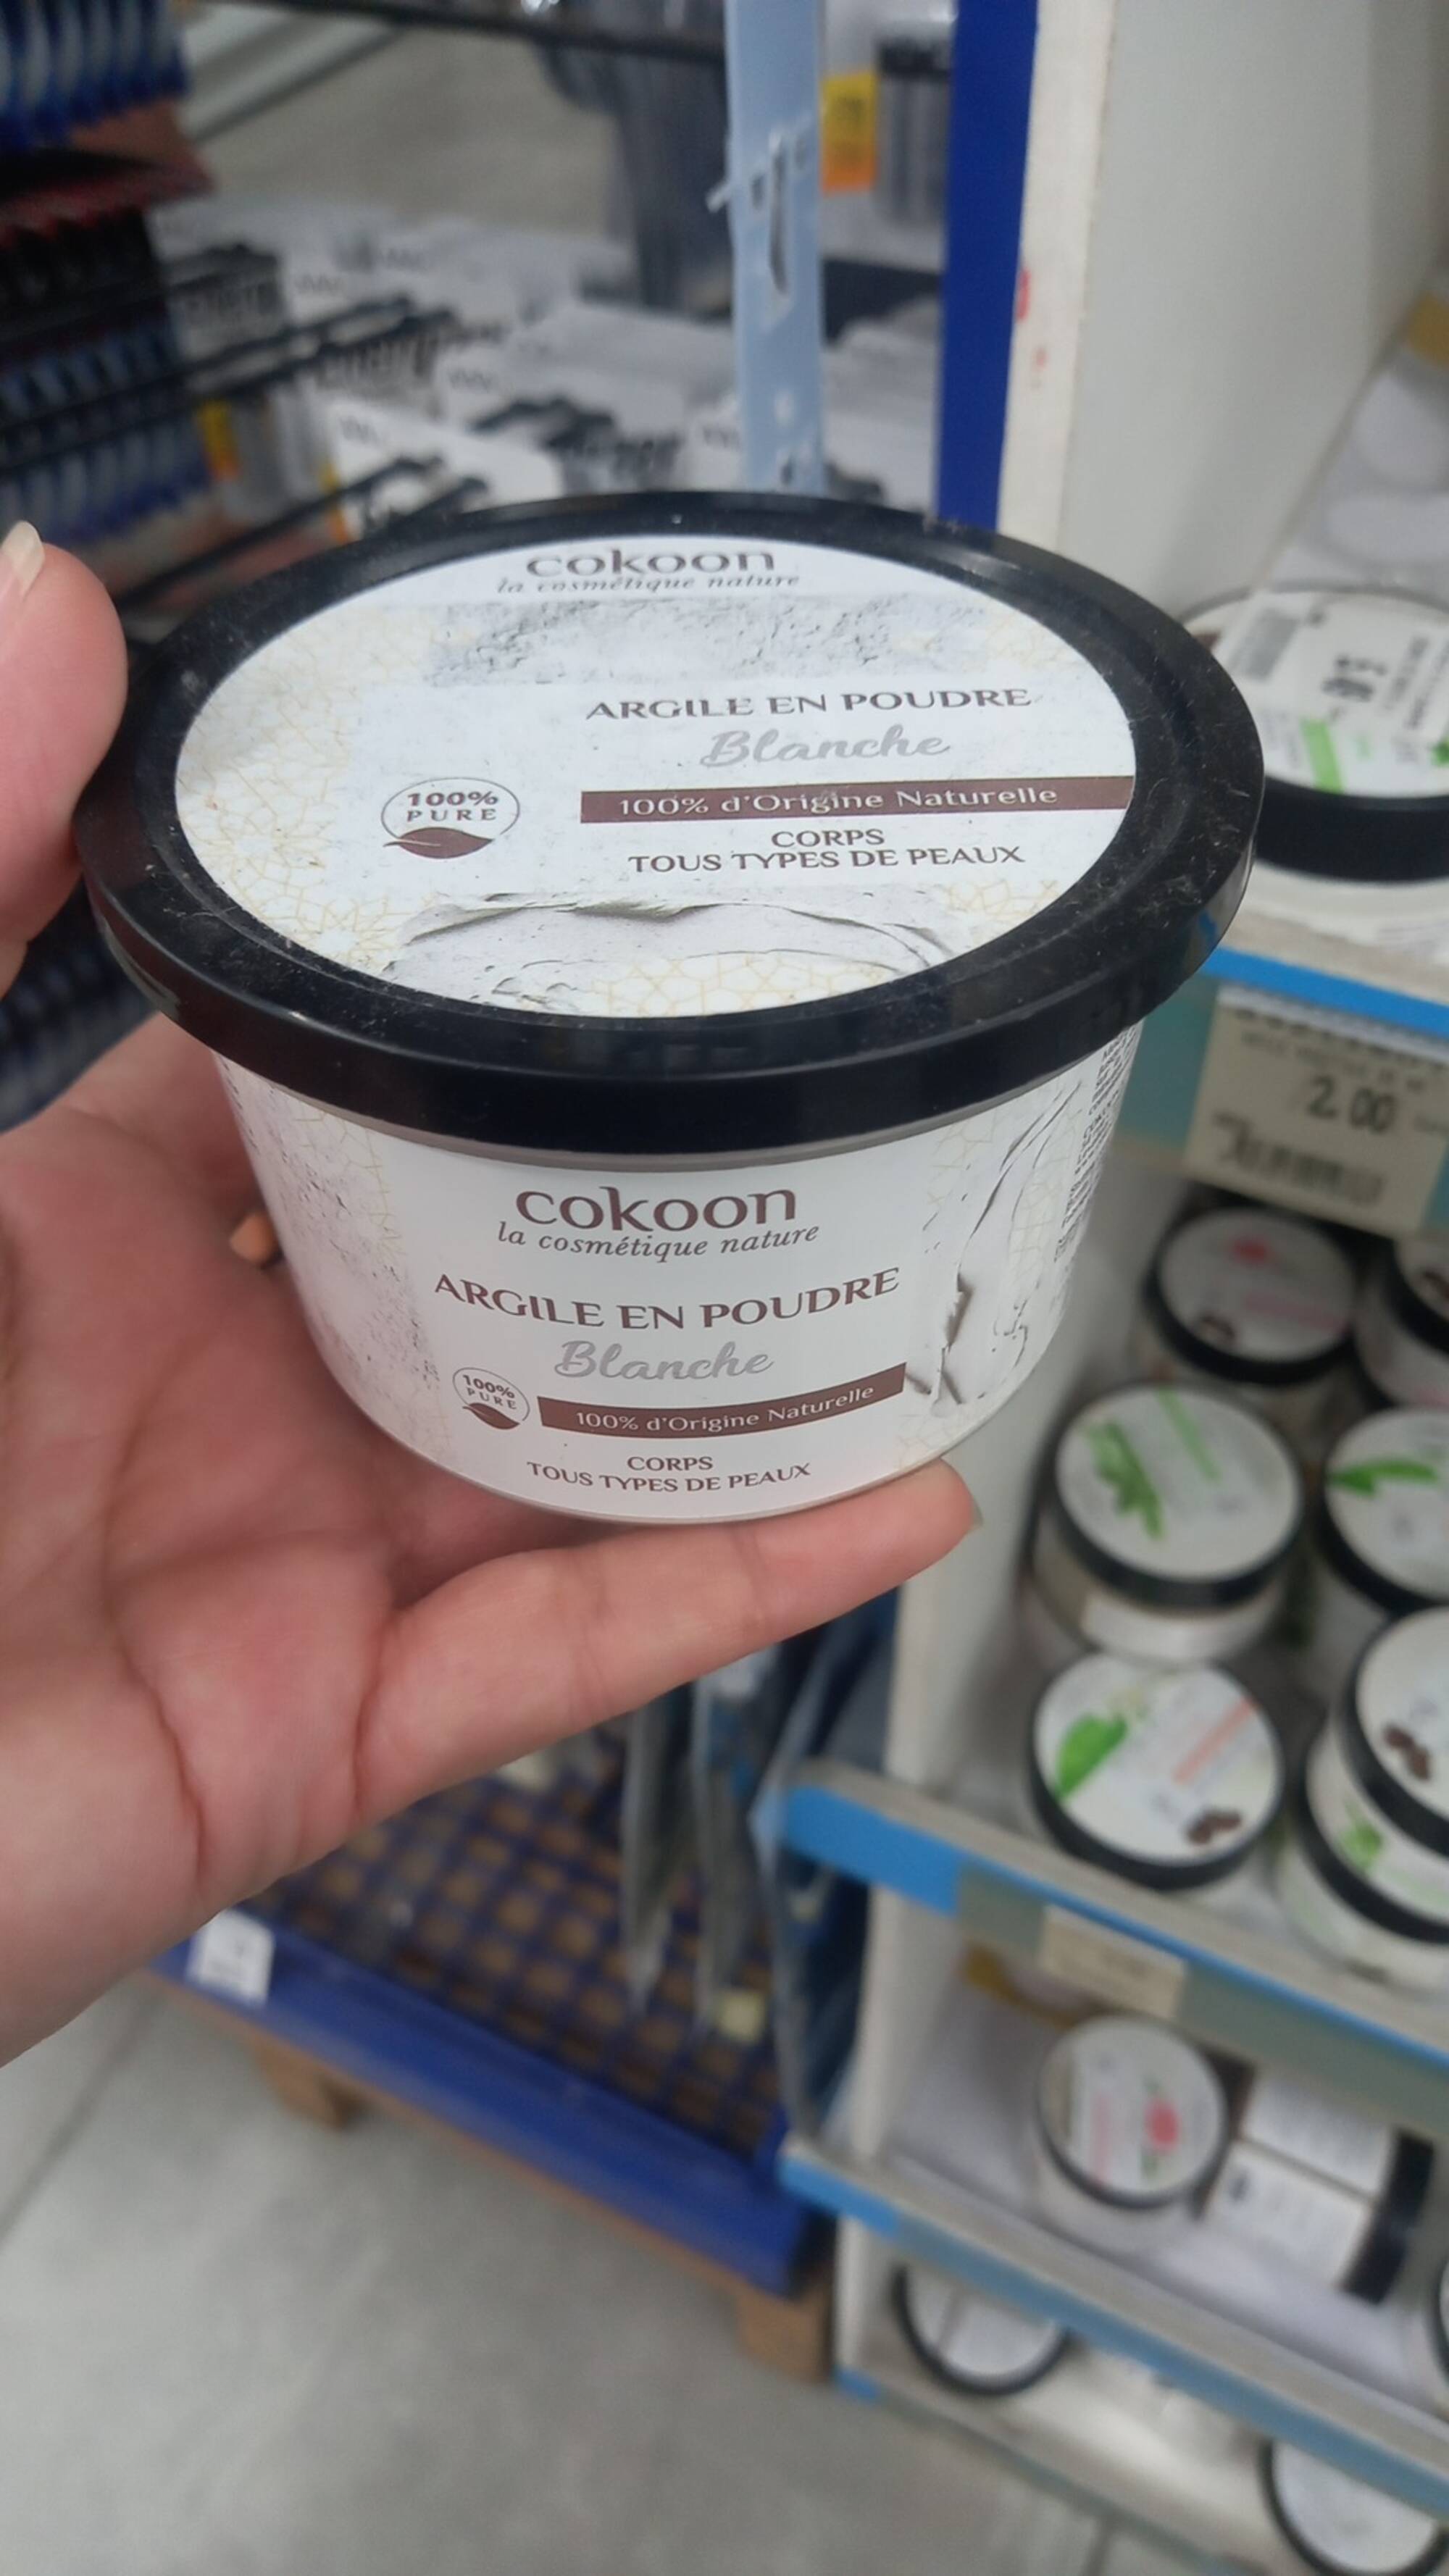 COKOON - Argile en poudre blanche